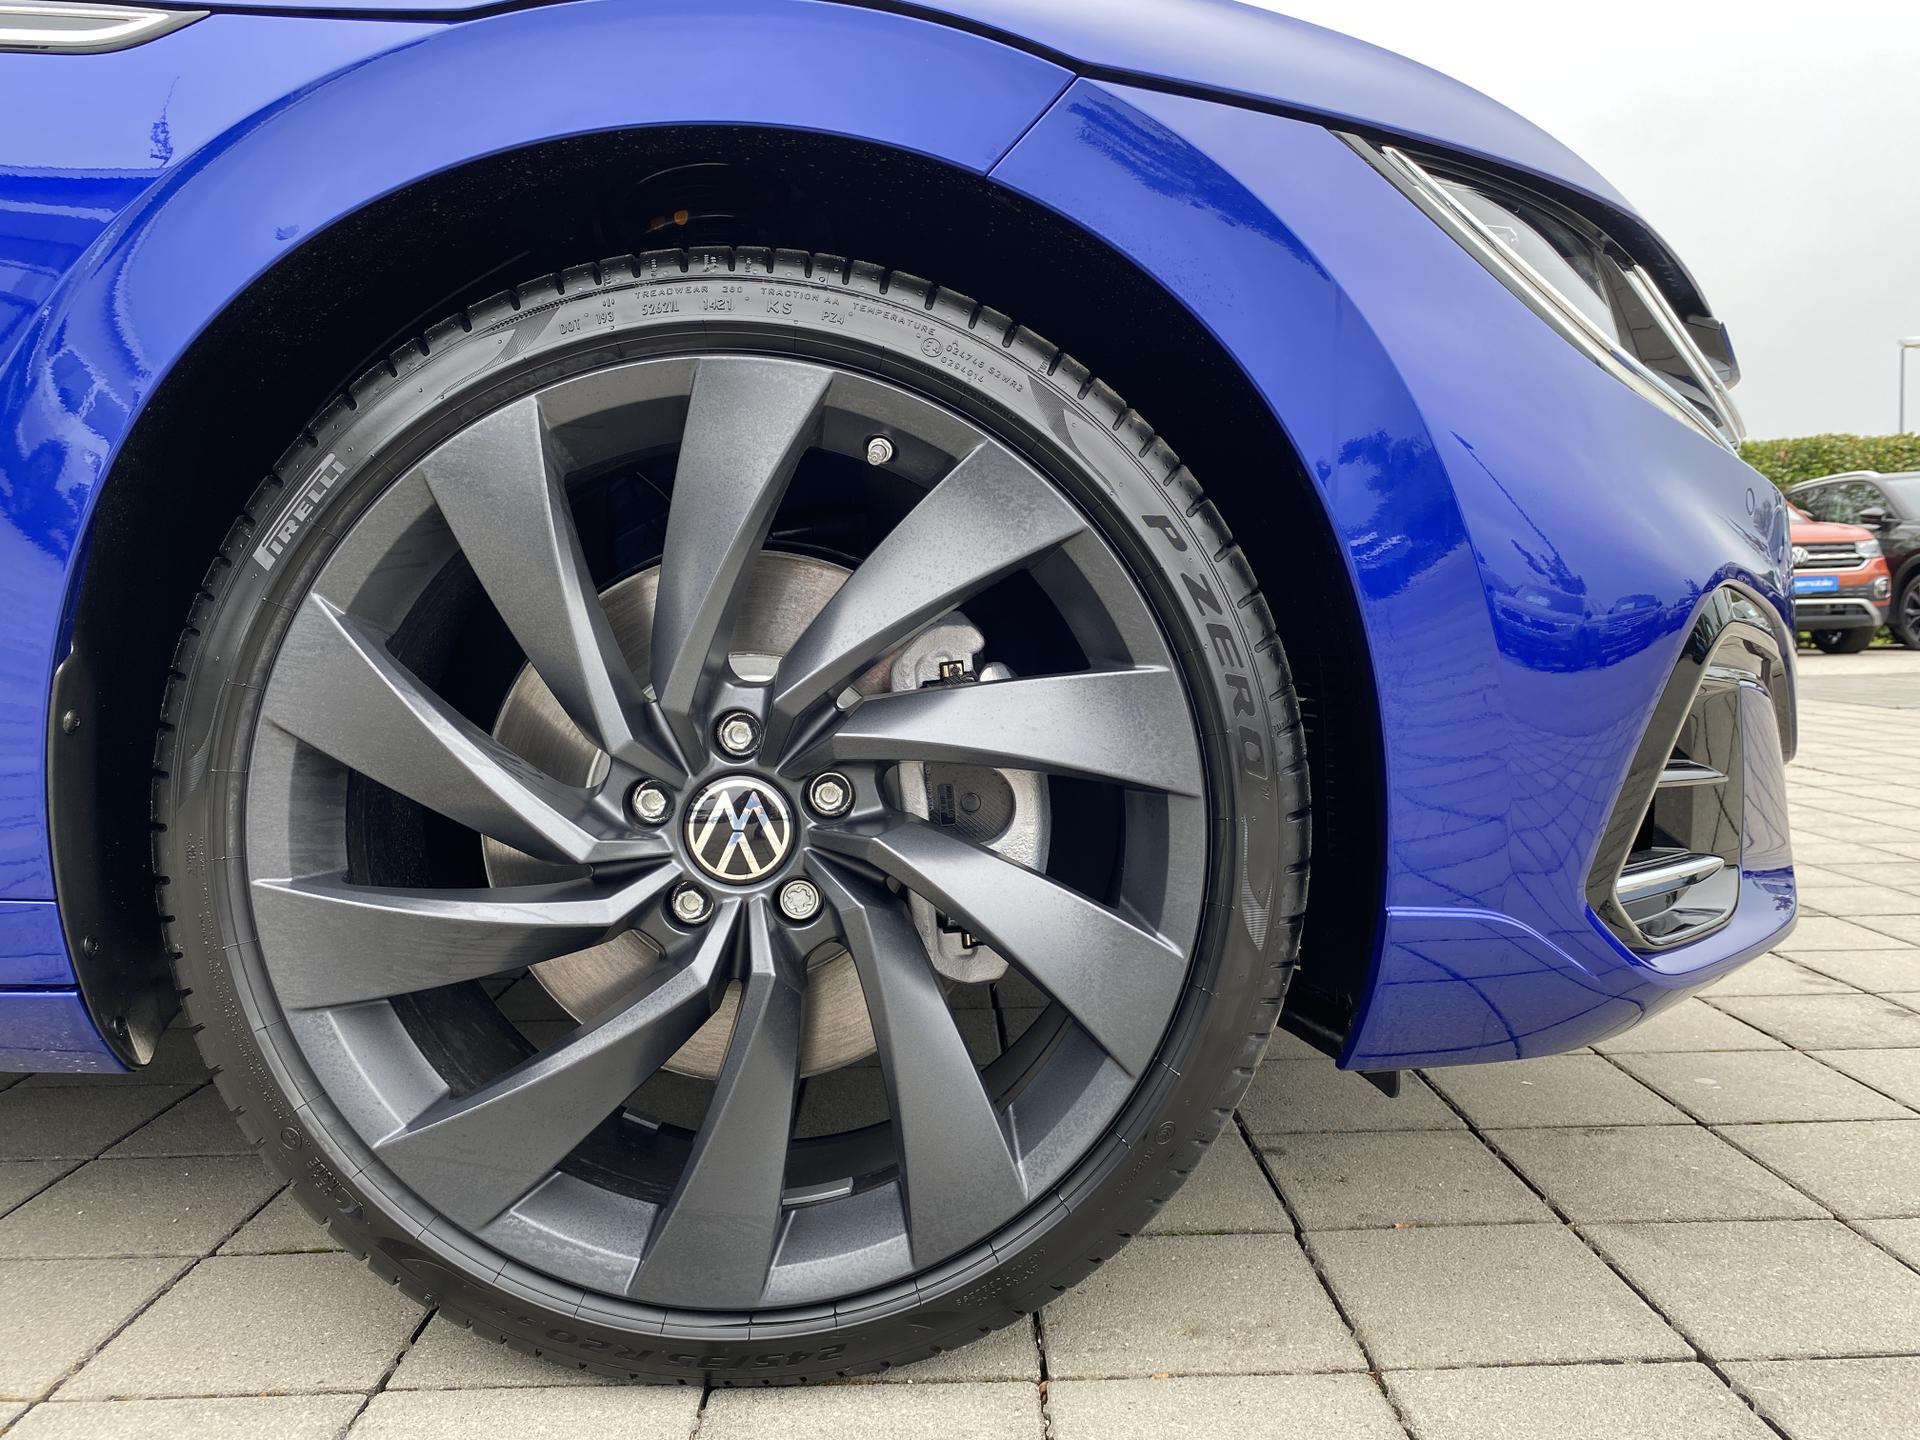 Kurztest: VW Arteon R Shooting Brake – Schöner Laden – und Spass